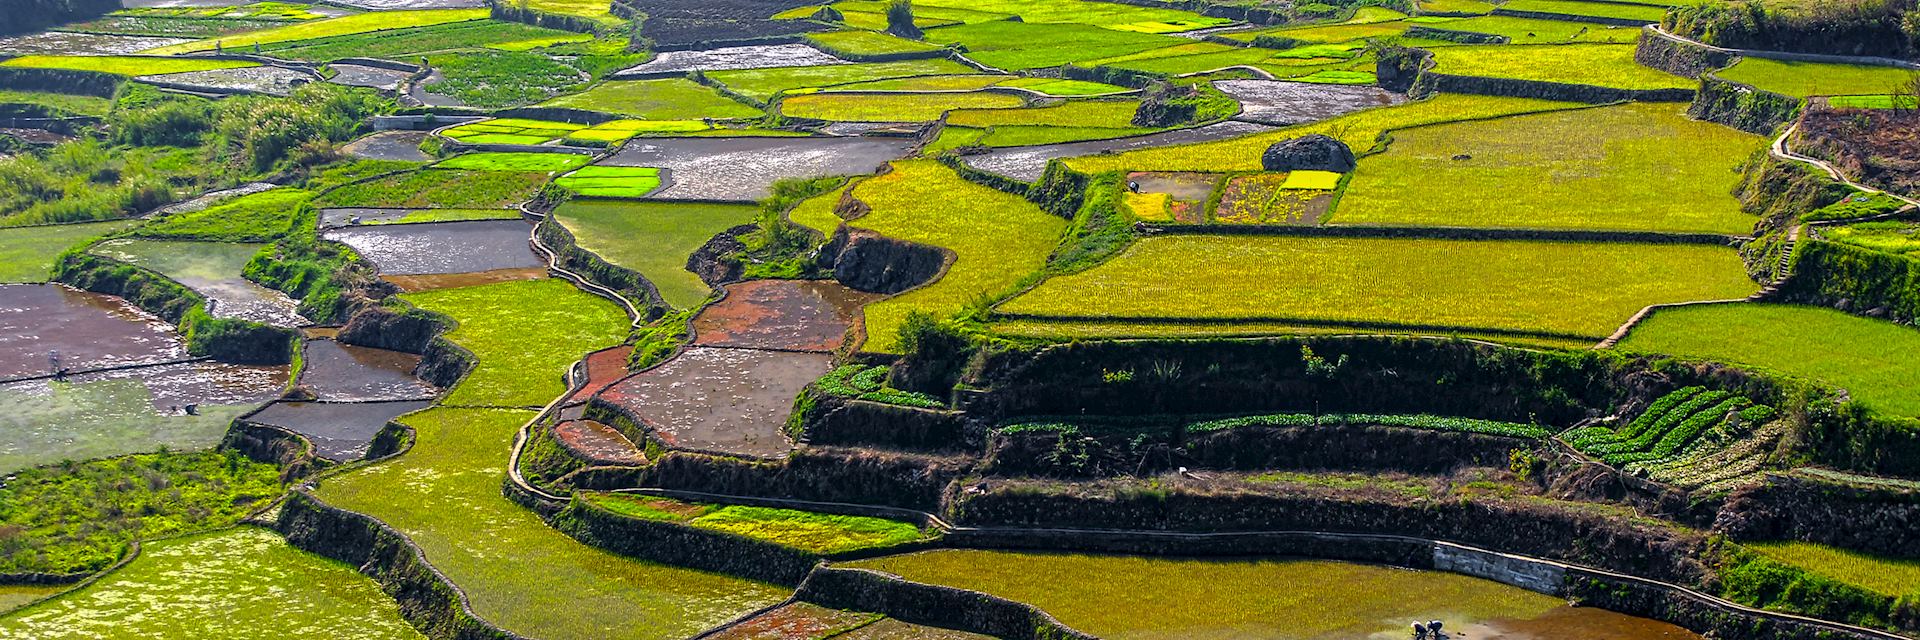 Rice terraces at Sagada